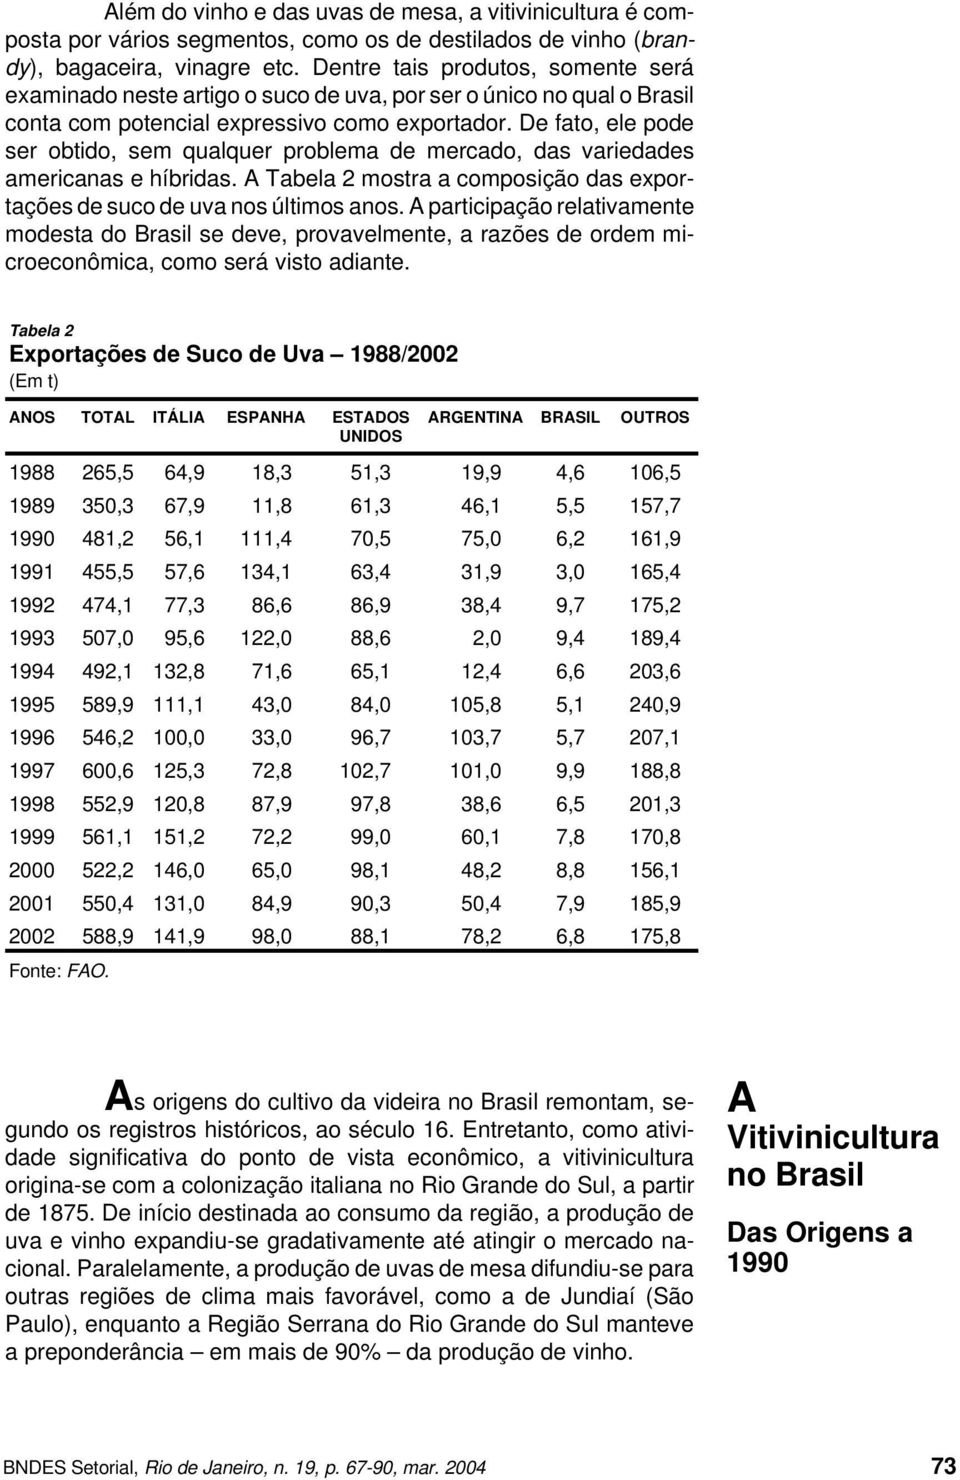 De fato, ele pode ser obtido, sem qualquer problema de mercado, das variedades americanas e híbridas. A Tabela 2 mostra a composição das exportações de suco de uva nos últimos anos.